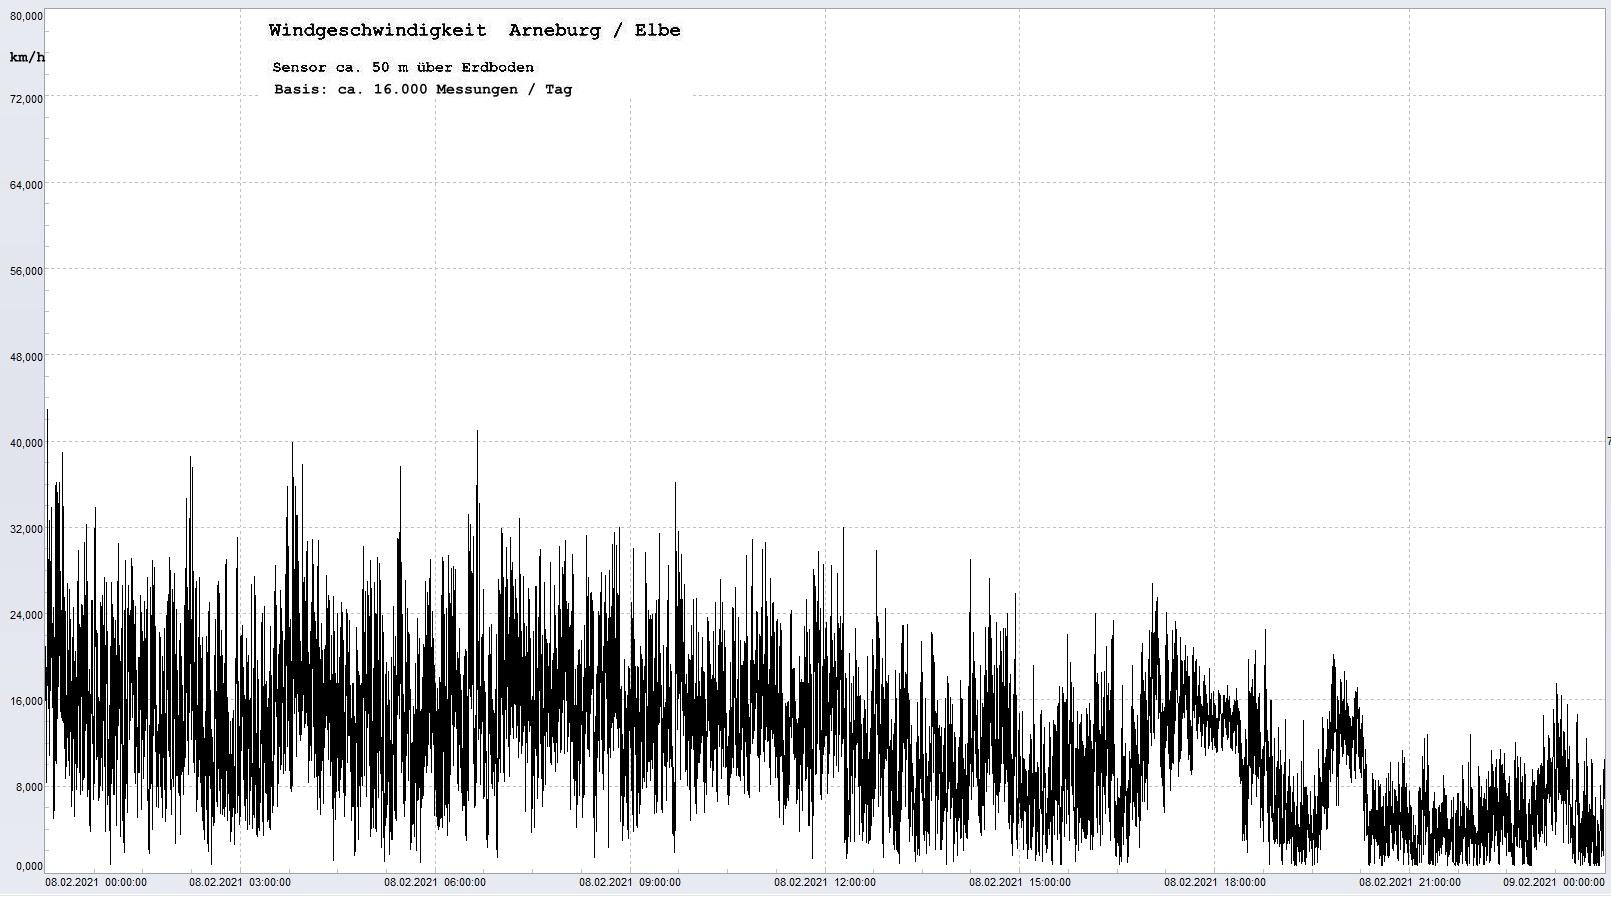 Arneburg Tages-Diagramm Winddaten, 08.02.2021
  Histogramm, Sensor auf Gebude, ca. 50 m ber Erdboden, Basis: 5s-Aufzeichnung